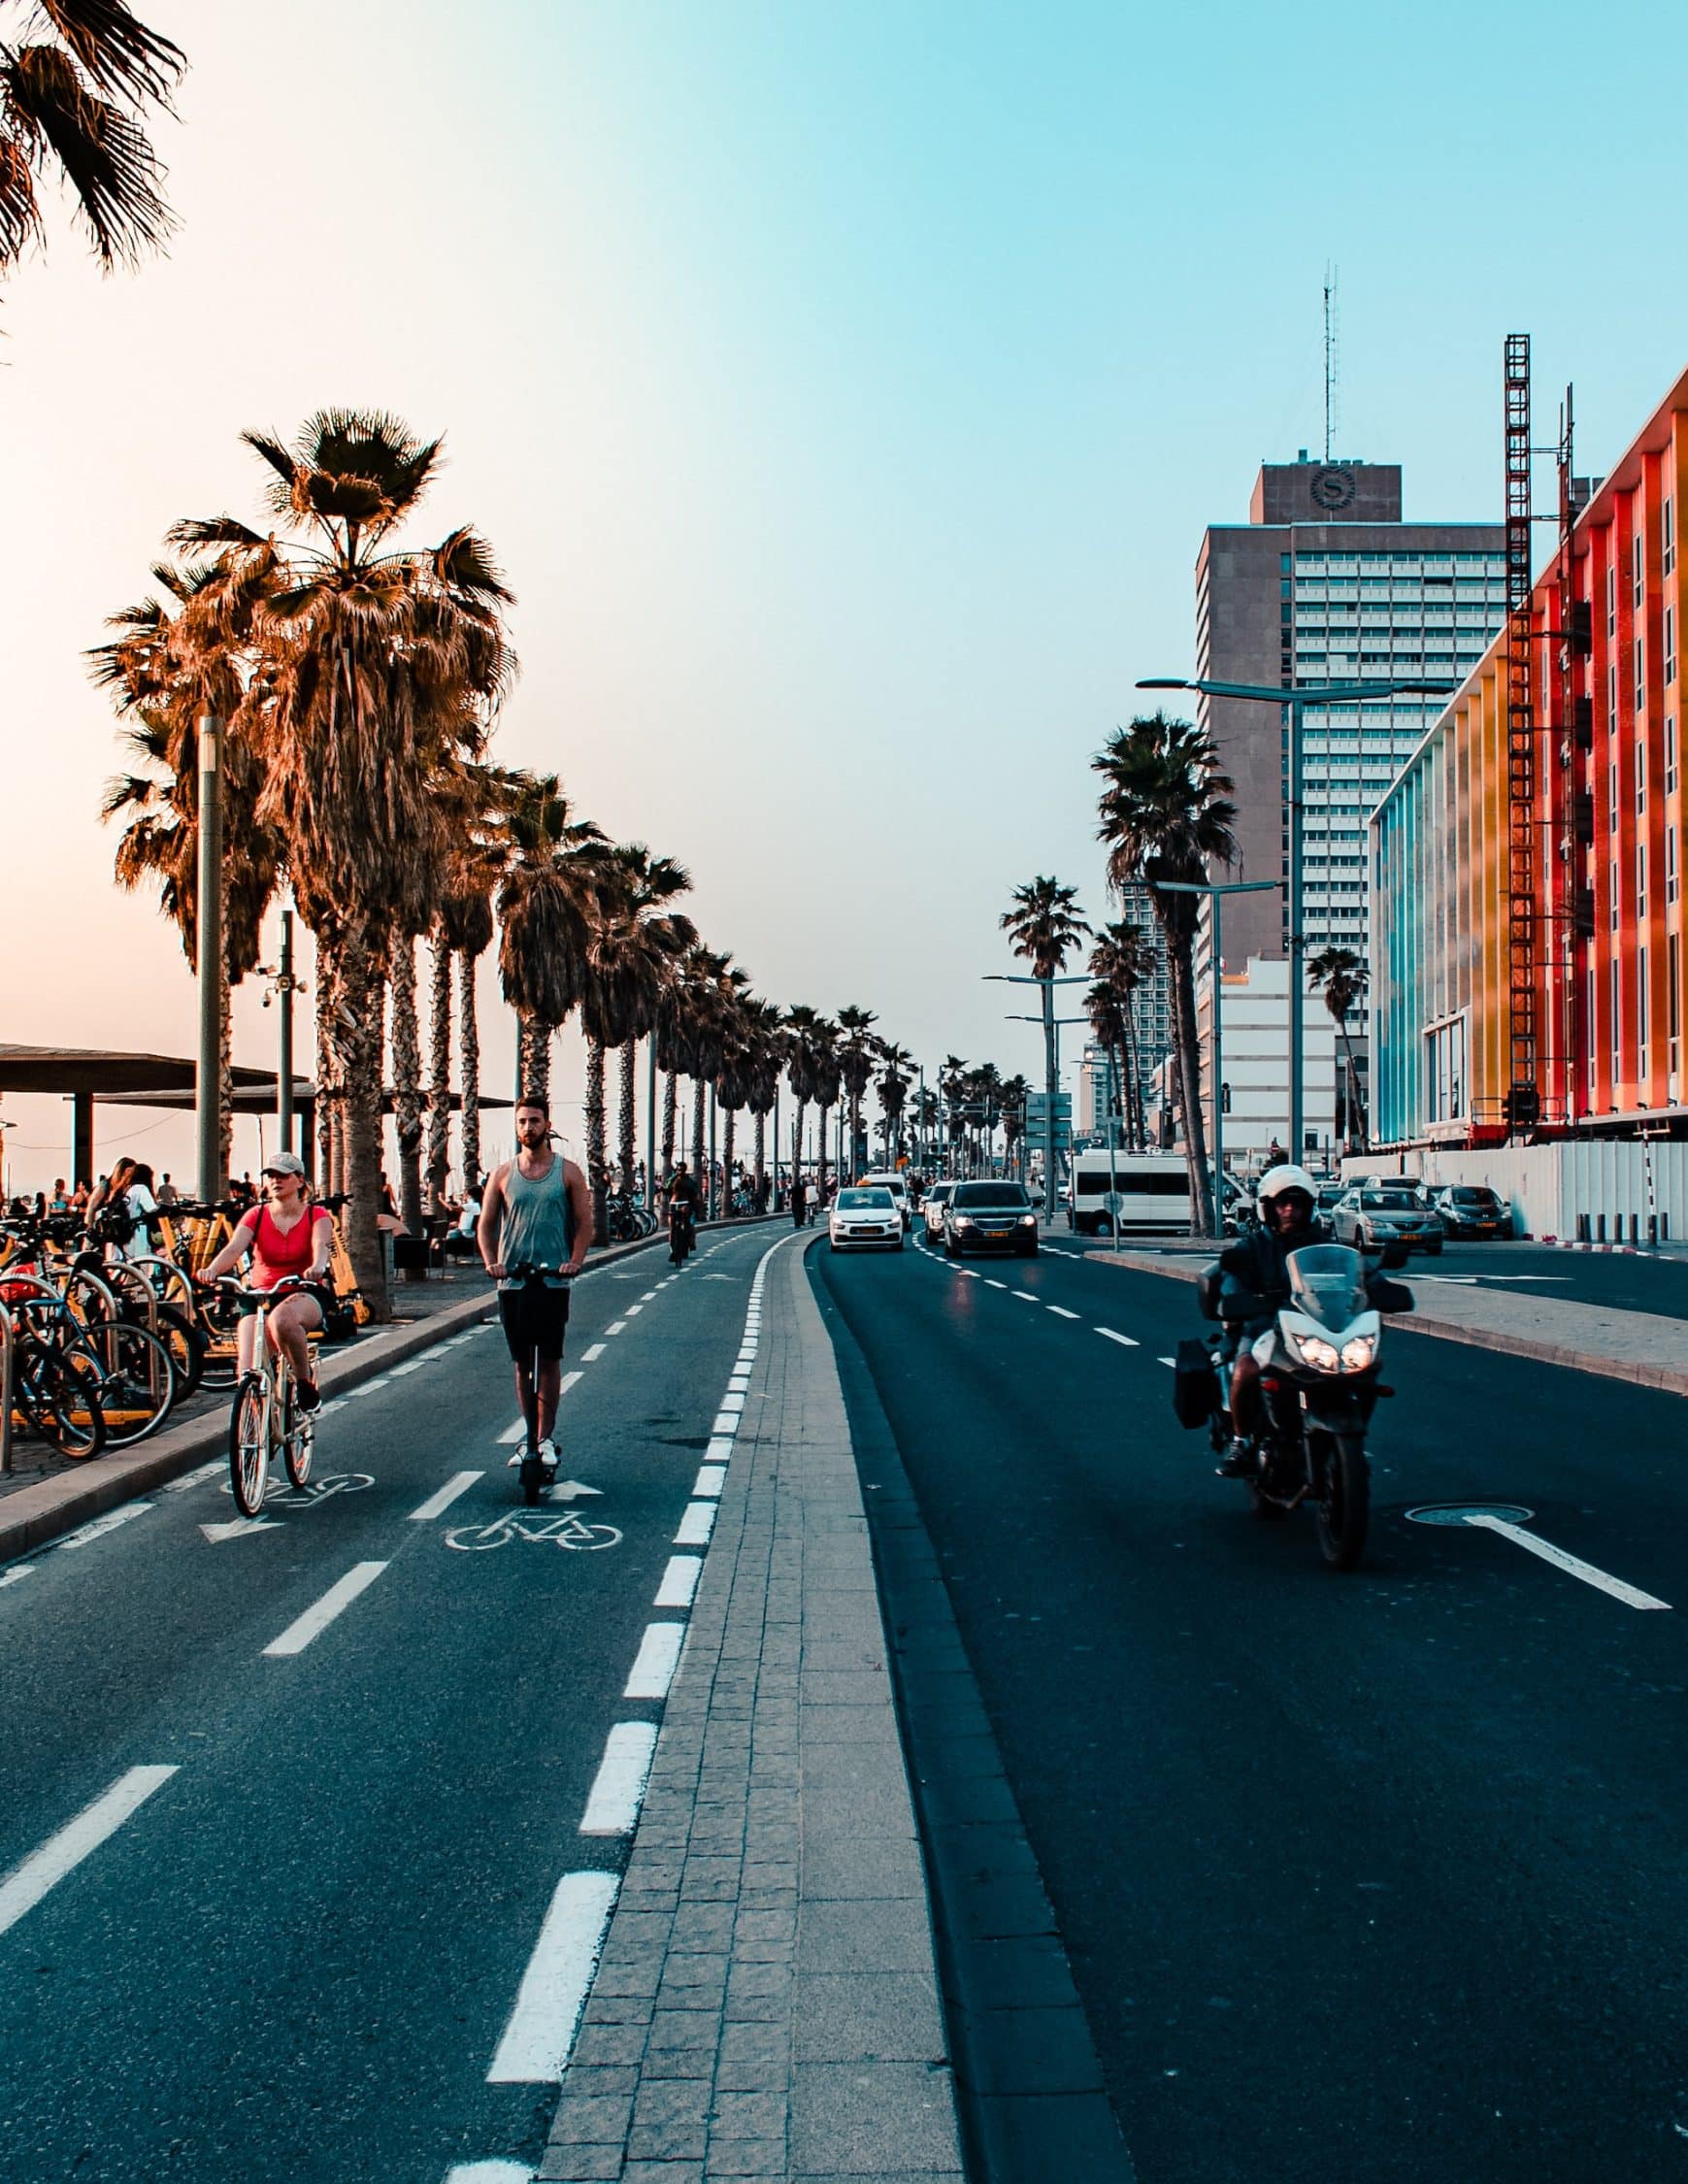 Tel Aviv promenade, central Israel